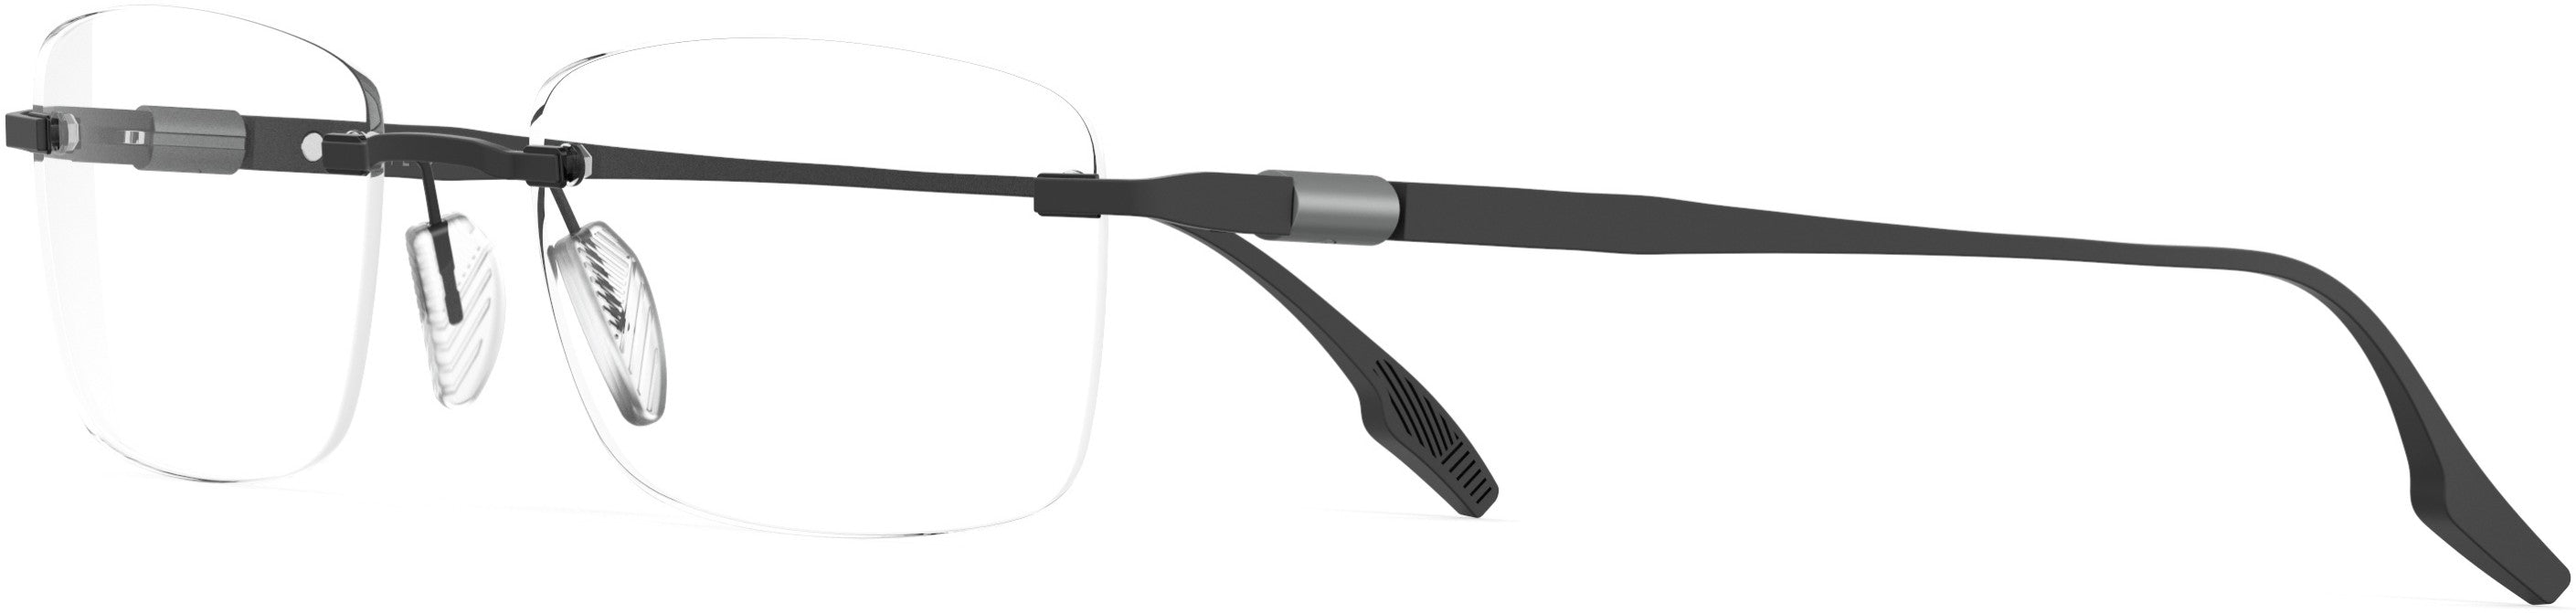 Safilo 2.0 Lente 01 Rectangular Eyeglasses 0003-0003  Matte Black (00 Demo Lens)